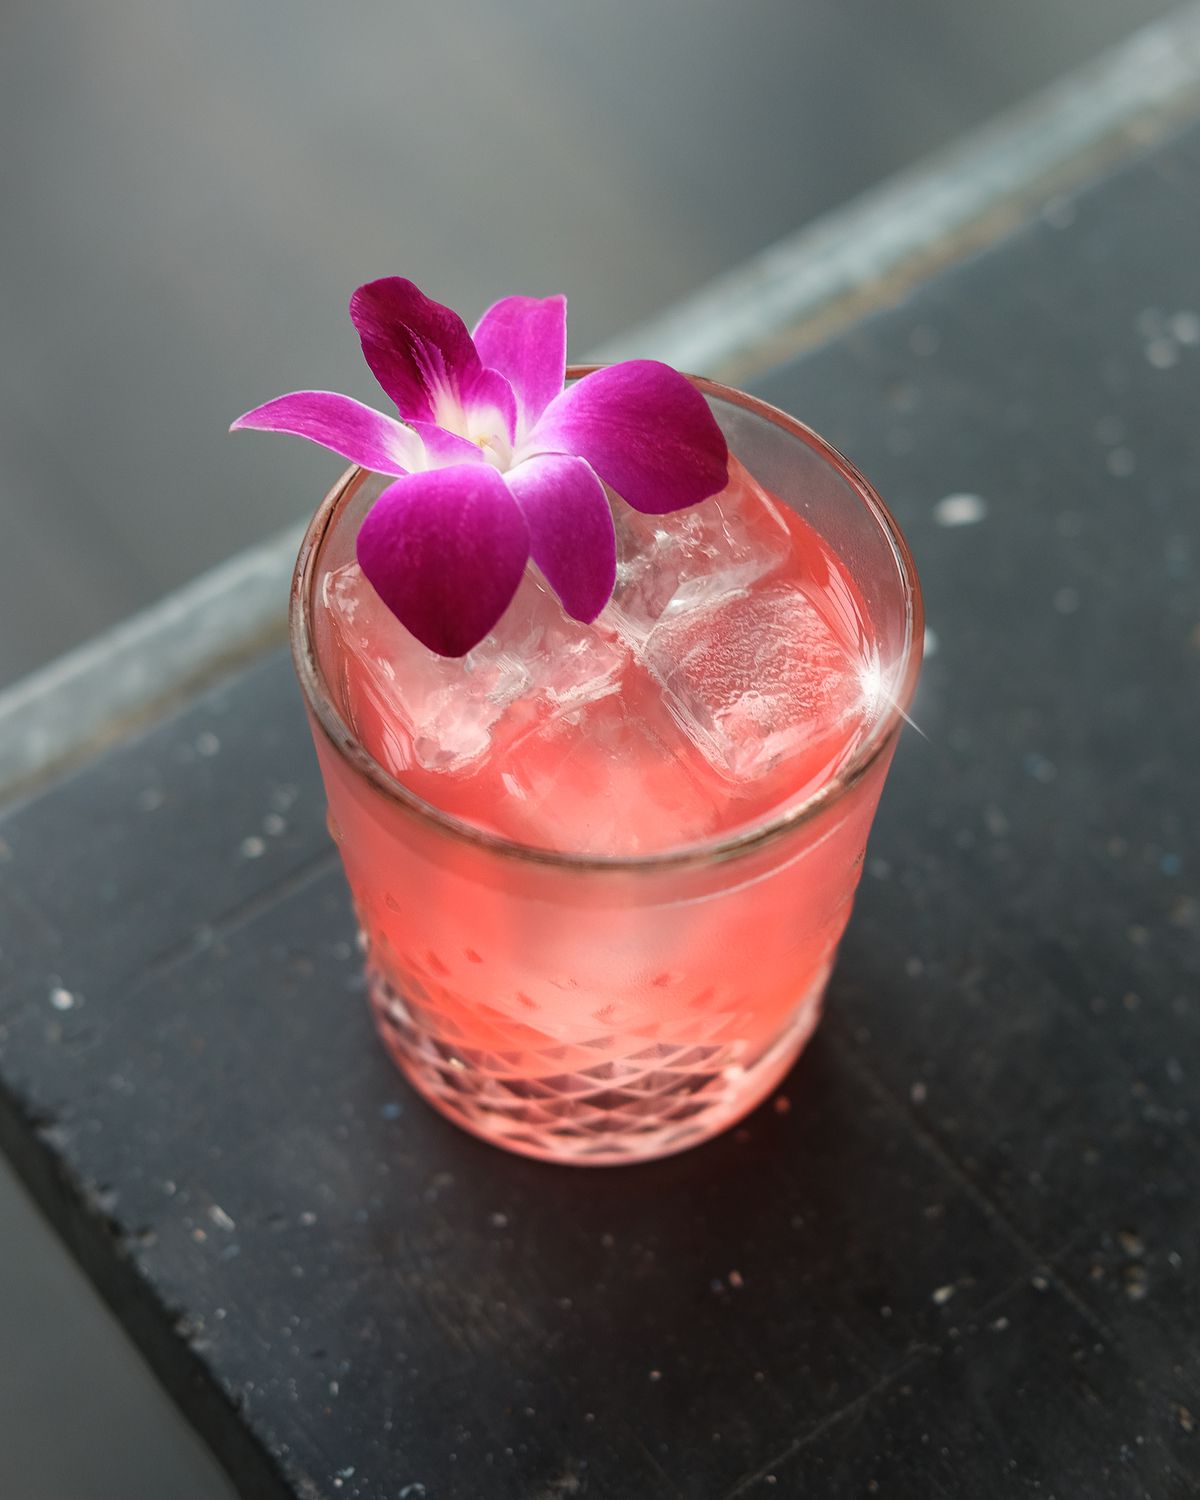 A pink spirit-free cocktail